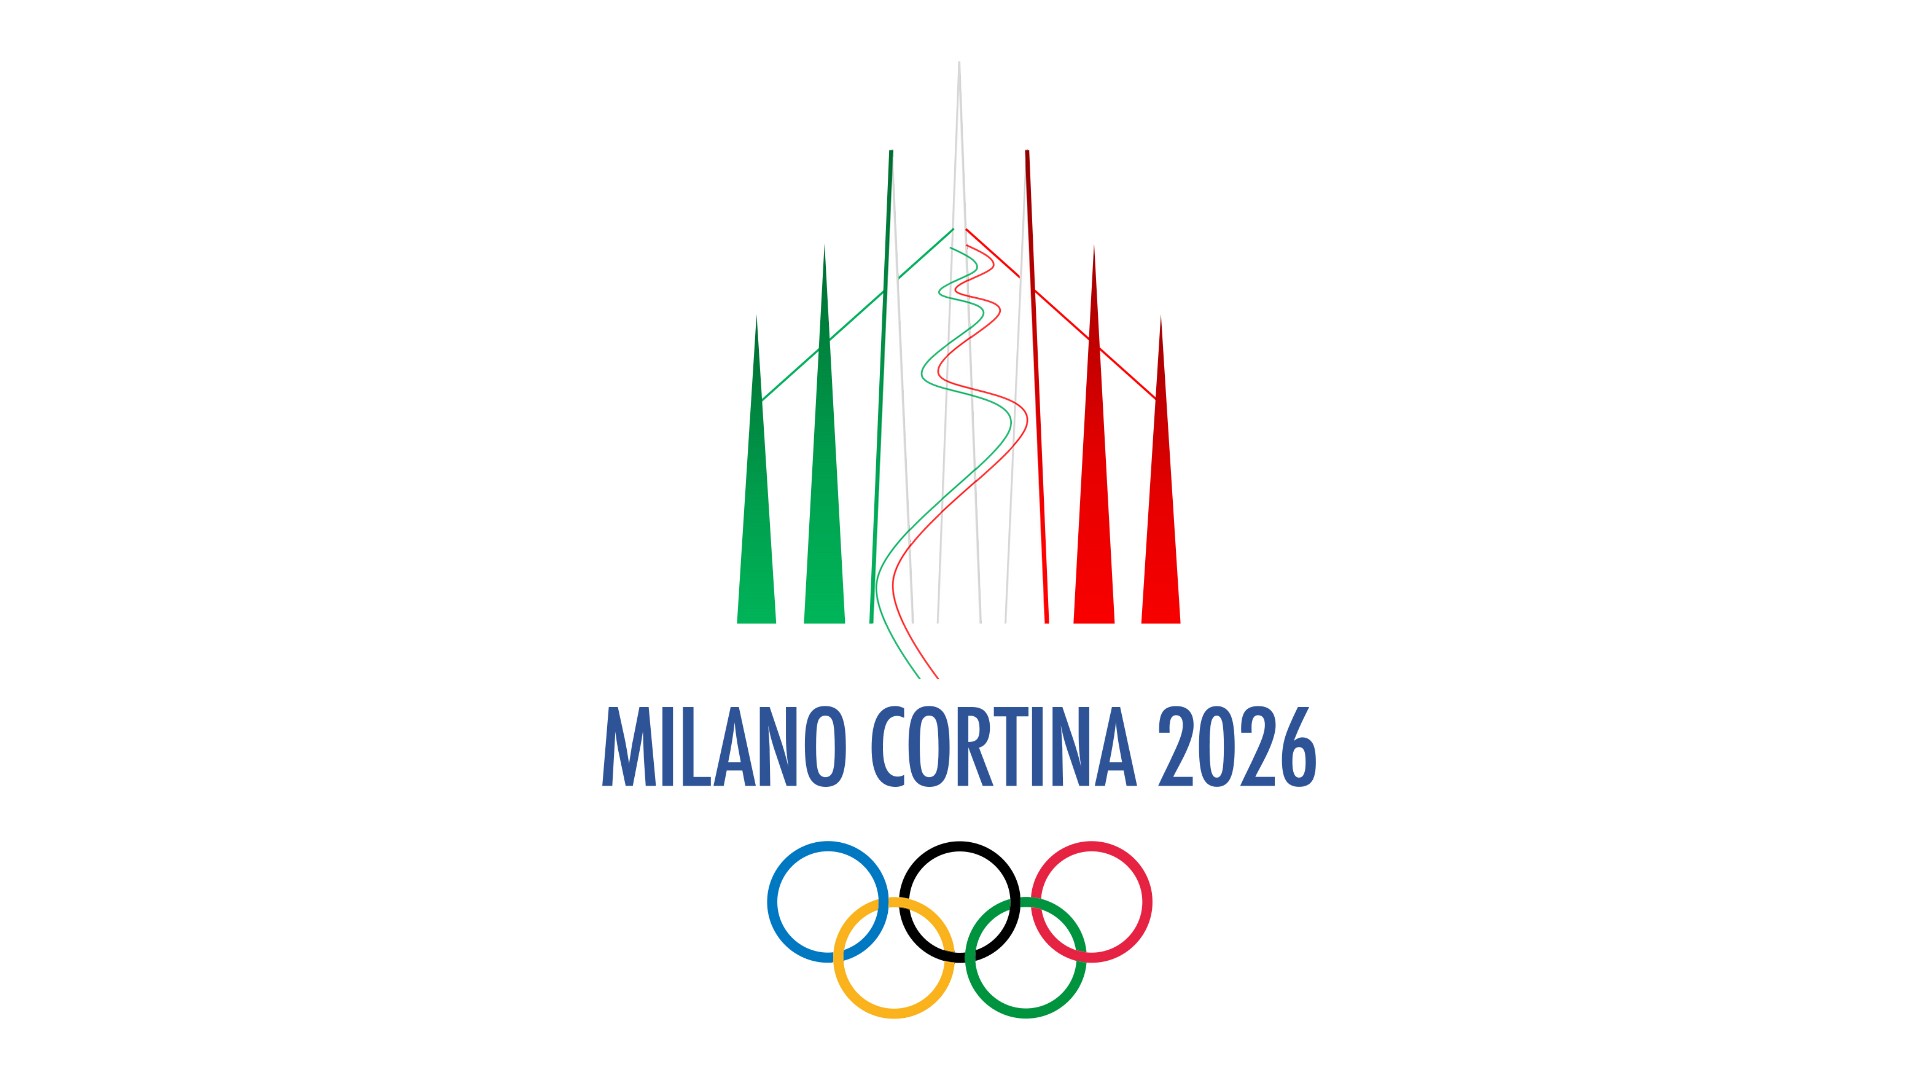 6 июня 2026 года. Эмблема олимпиады 2026. Следующие Олимпийские игры зимние 2026.